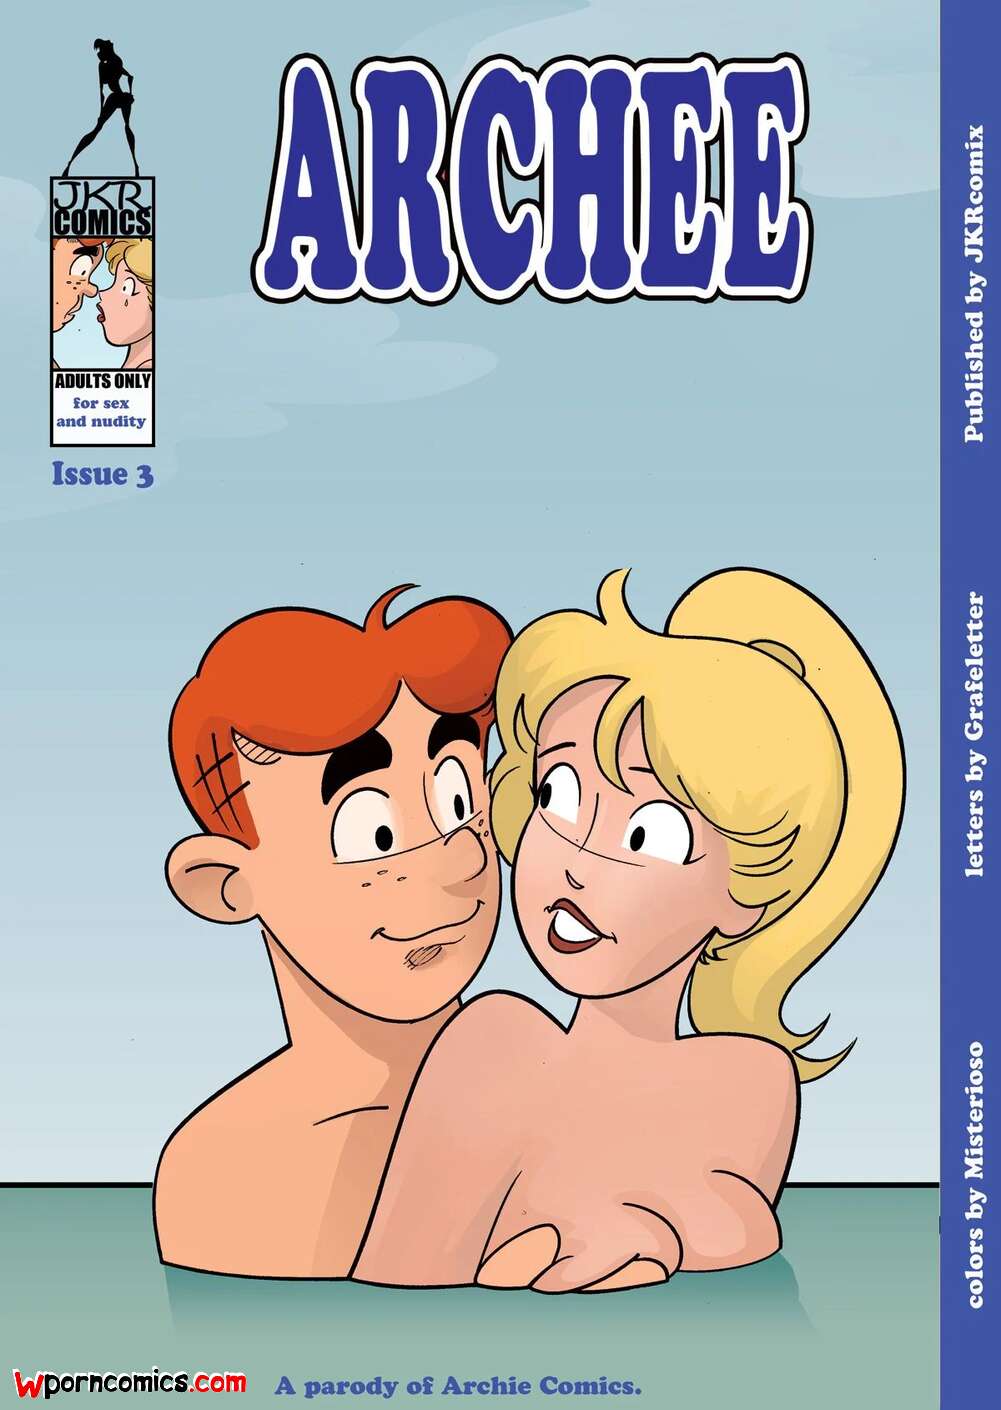 âœ…ï¸ Porn comic Archee. Chapter 3. Archies. JKRComix. Sex comic boy went with  | Porn comics in English for adults only | sexkomix2.com